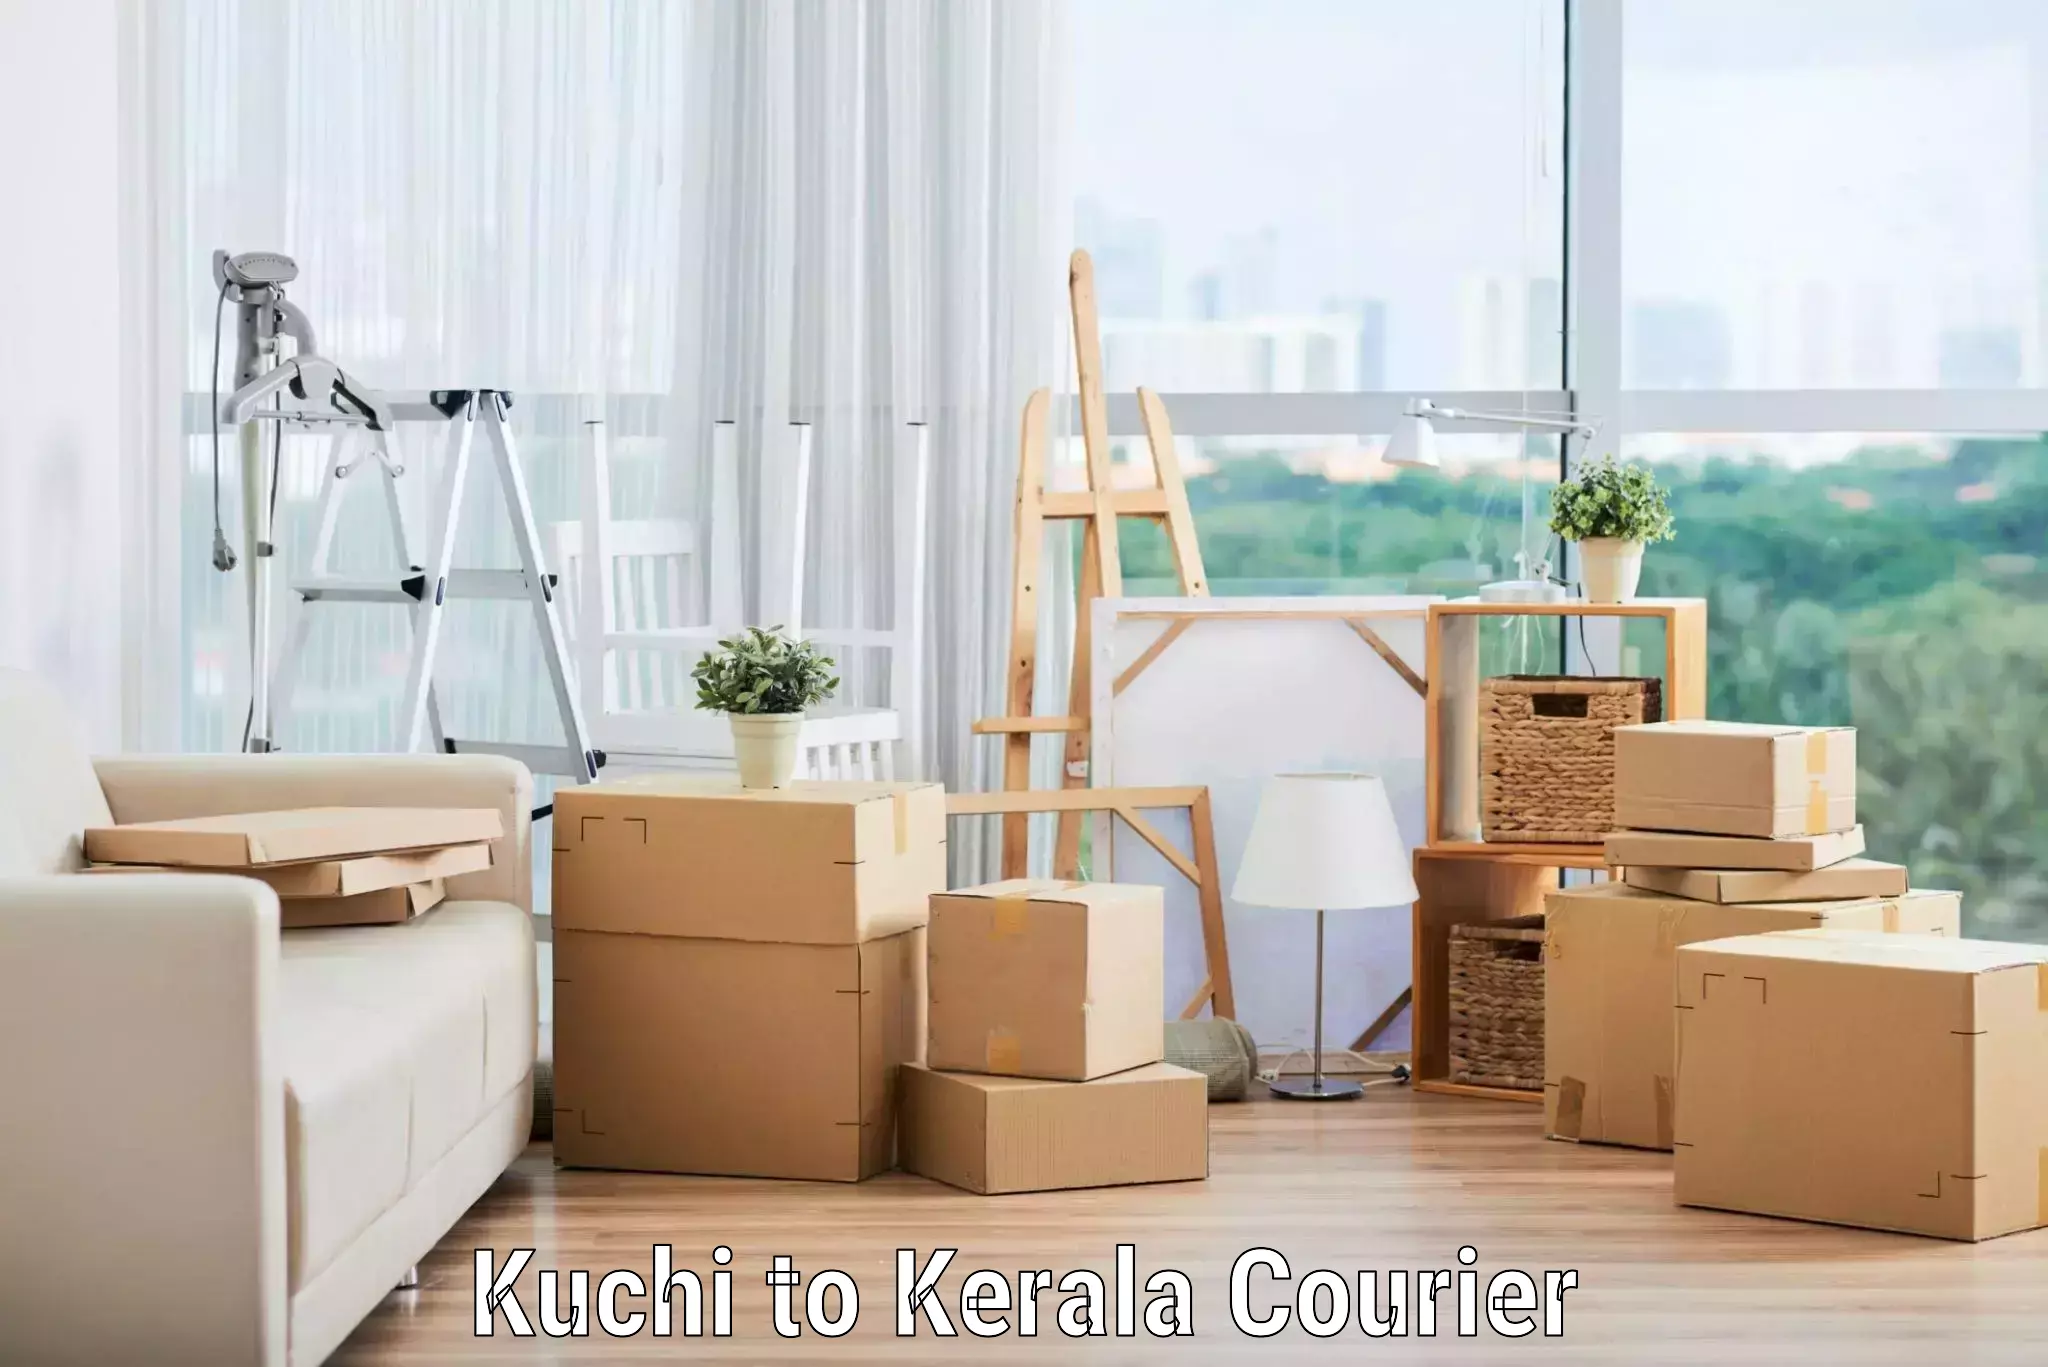 Furniture transport company Kuchi to Kayamkulam